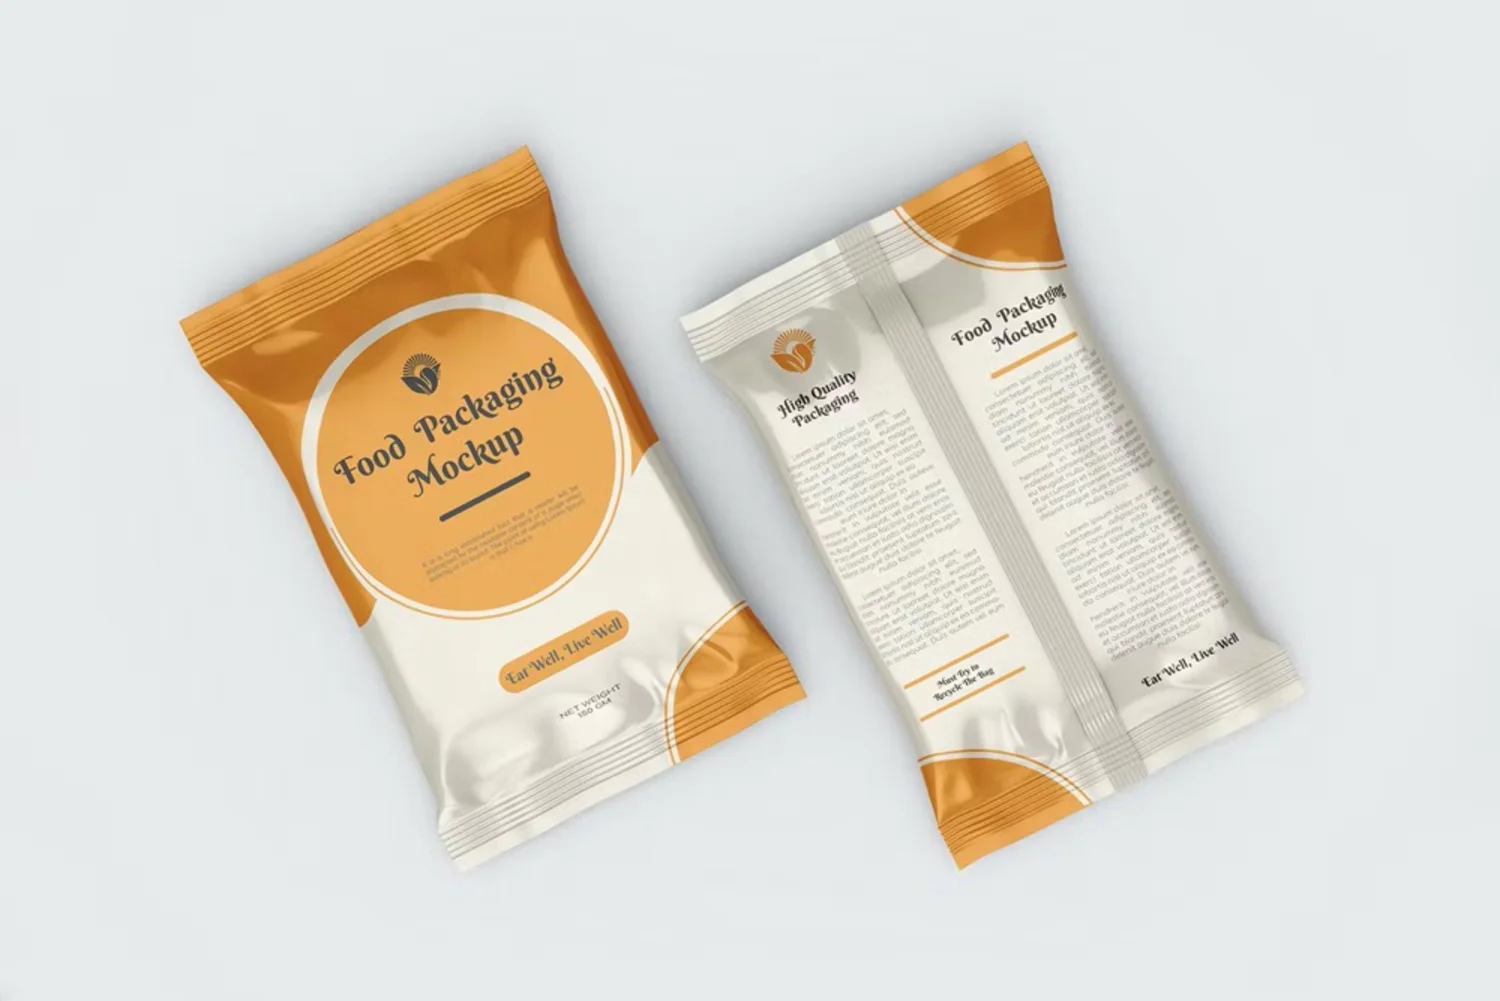 5089 18款铝箔零食小吃食品包装袋设计作品贴图ps样机素材展示效果图 Glossy Snack Flow Pack Packaging PSD Mockup@GOOODME.COM